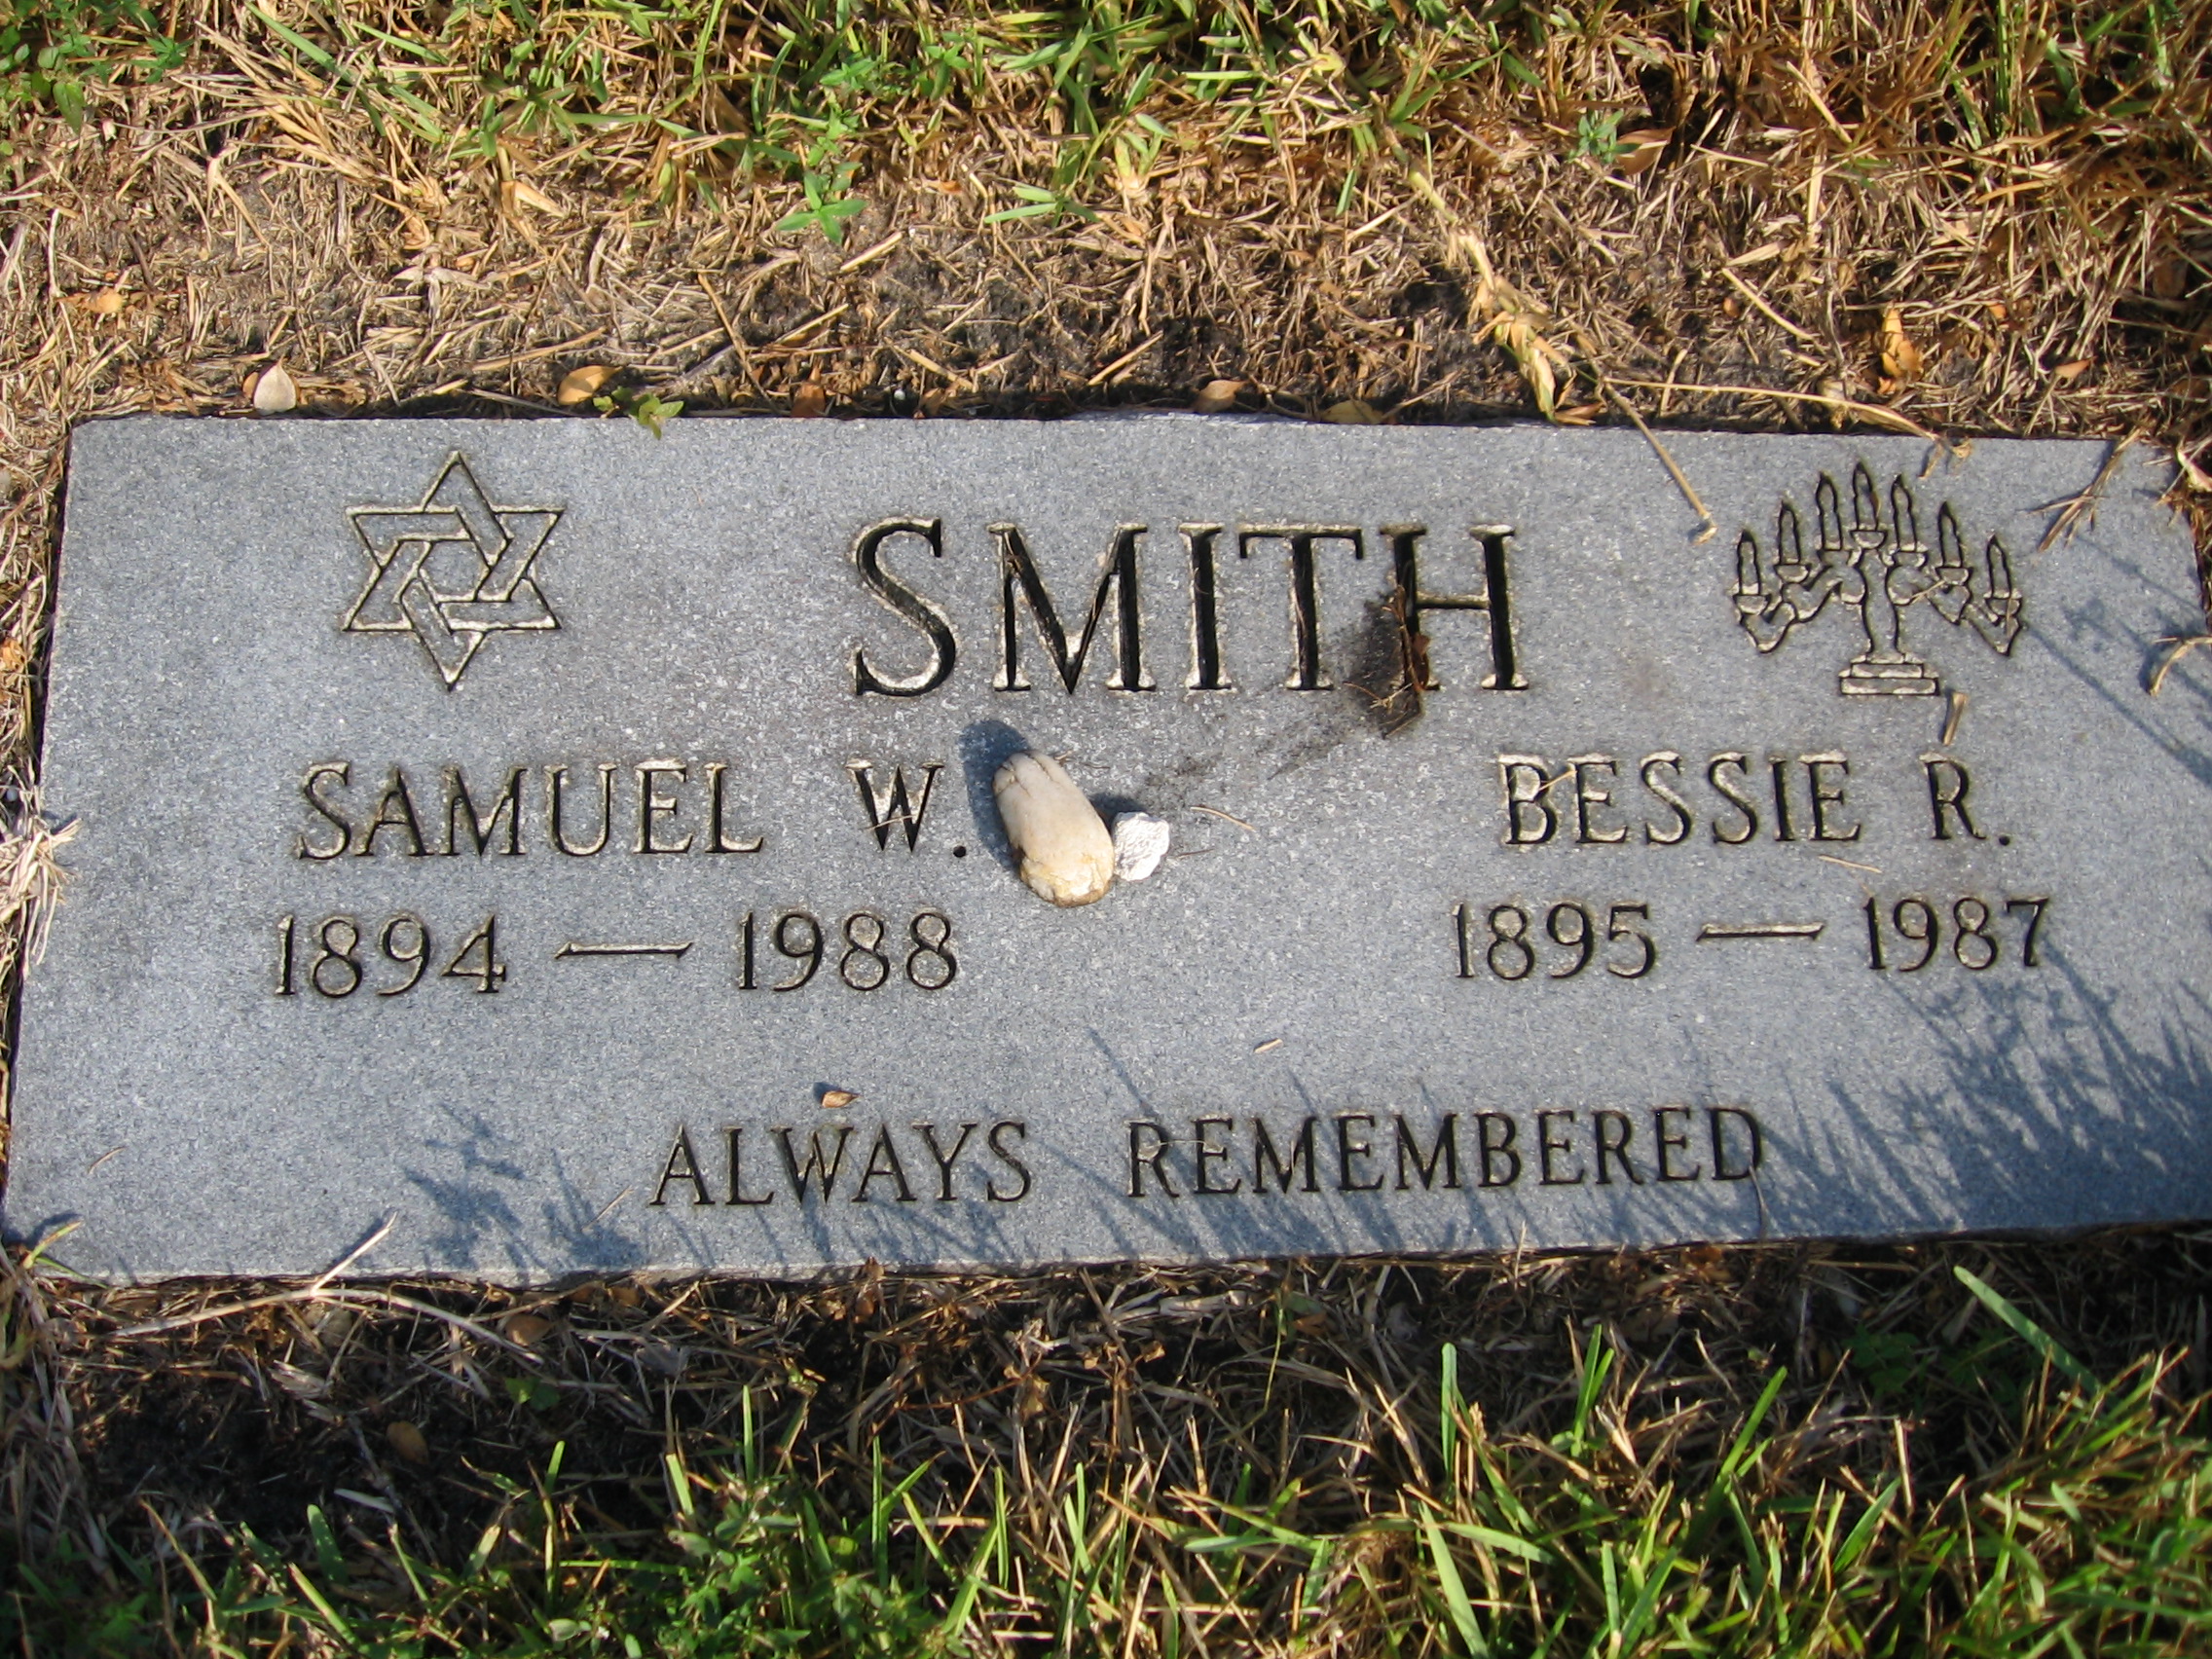 Bessie R Smith